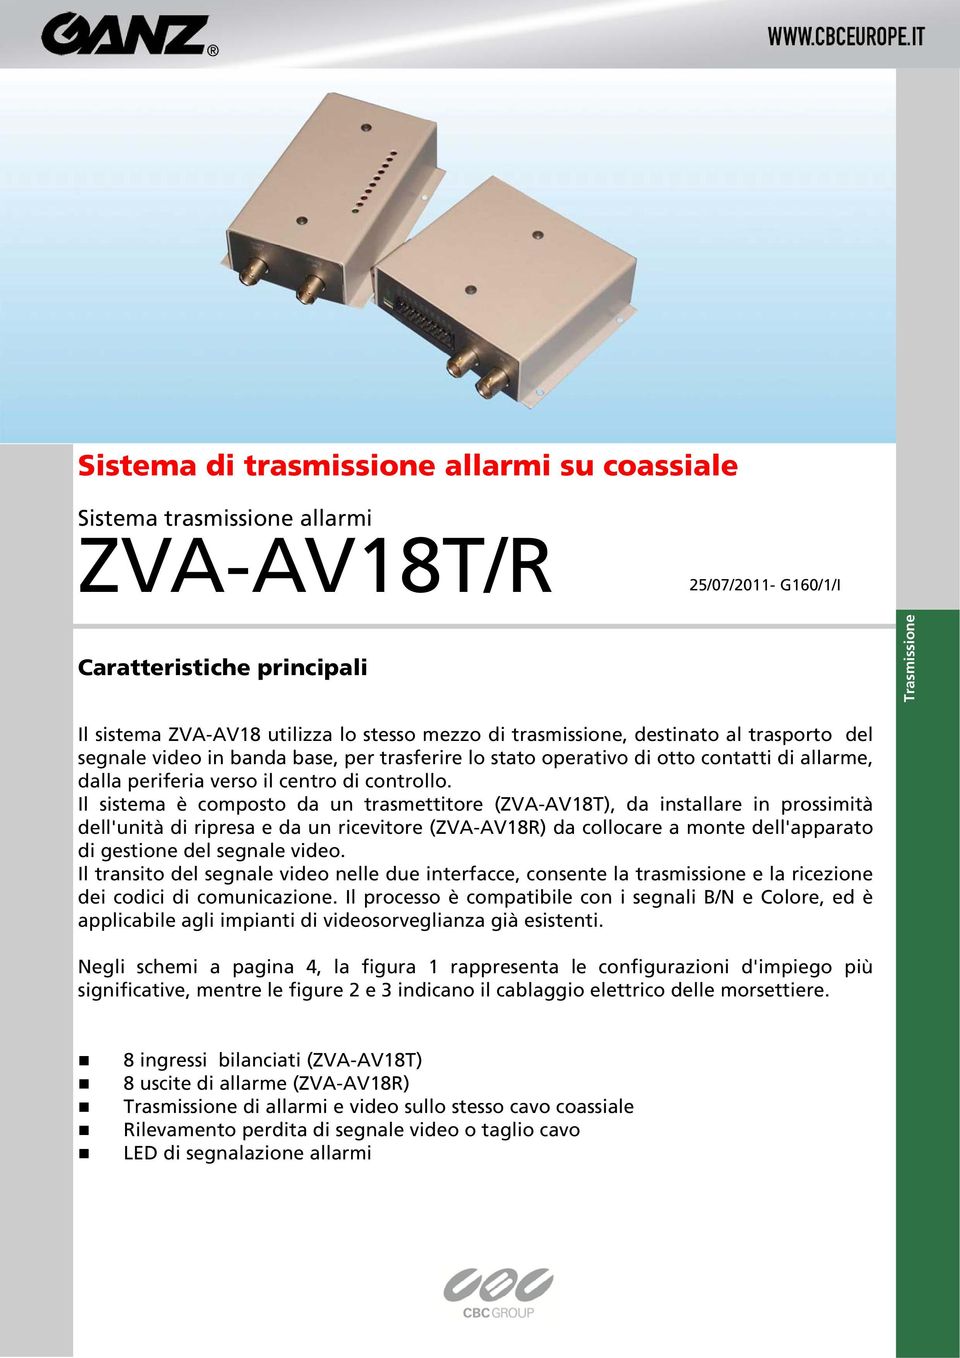 Il sistema è composto da un trasmettitore (ZVA-AV18T), da installare in prossimità dell'unità di ripresa e da un ricevitore (ZVA-AV18R) da collocare a monte dell'apparato di gestione del segnale